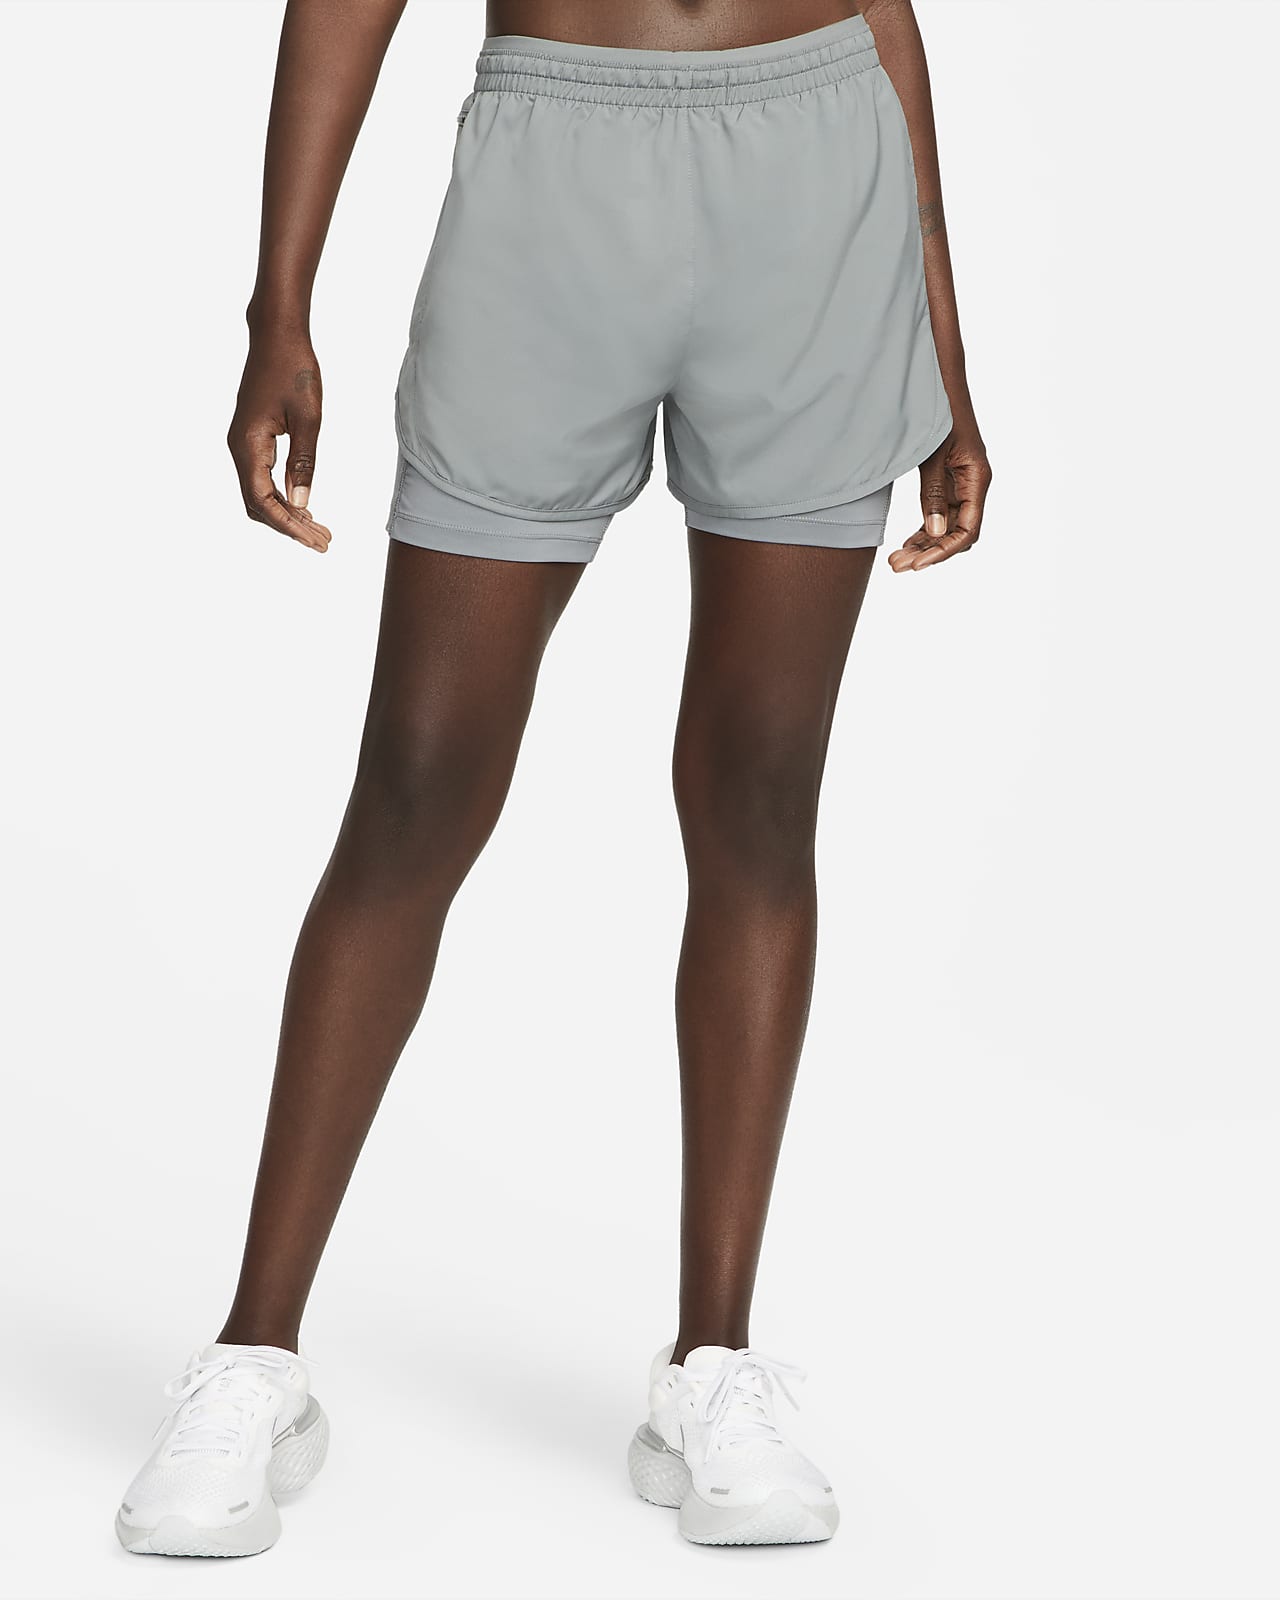 Organizar visión charla Nike Tempo Luxe Pantalón corto de running 2 en 1 - Mujer. Nike ES